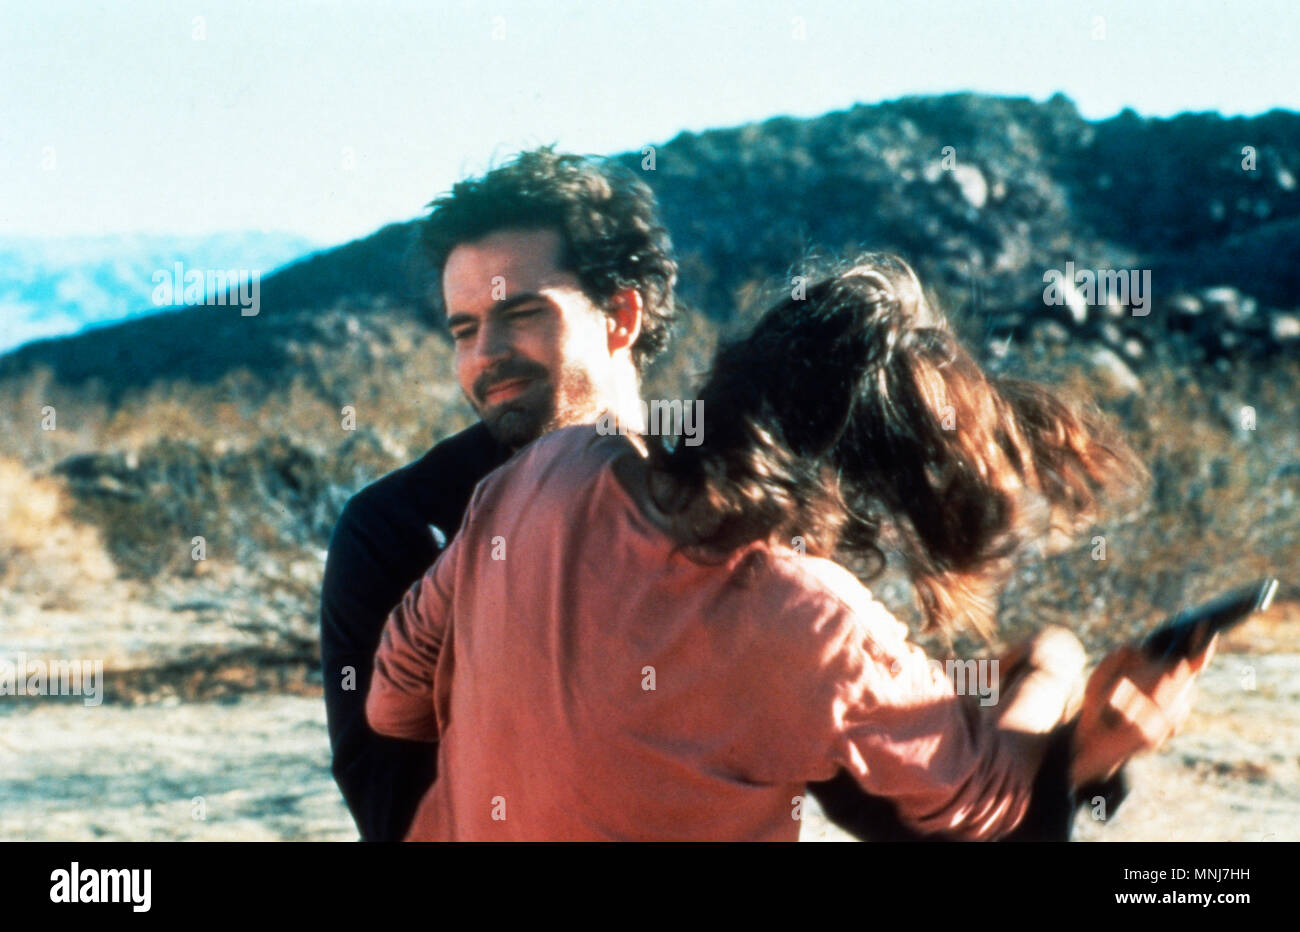 Dopo il buio, il mio dolce, USA 1990, Regie: James Foley, Darsteller: Rocky Giordani, Rachel Ward Foto Stock